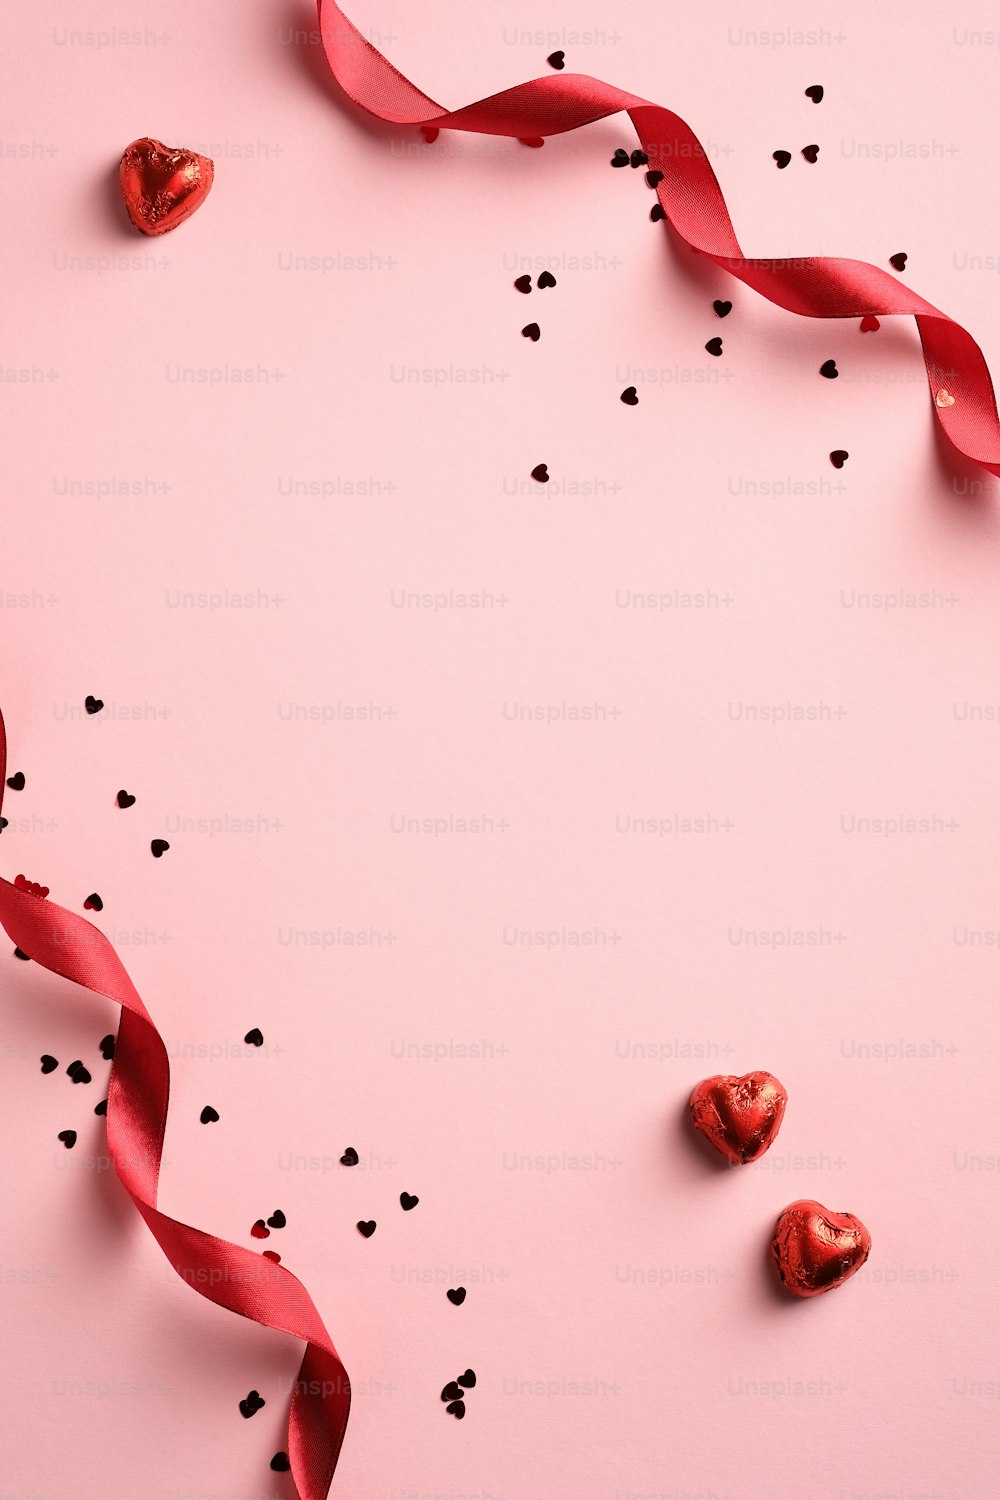 Elegante sfondo di San Valentino con nastro rosso, coriandoli, dolci a forma di cuore su sfondo rosa. Stile minimale. Posa piatta.